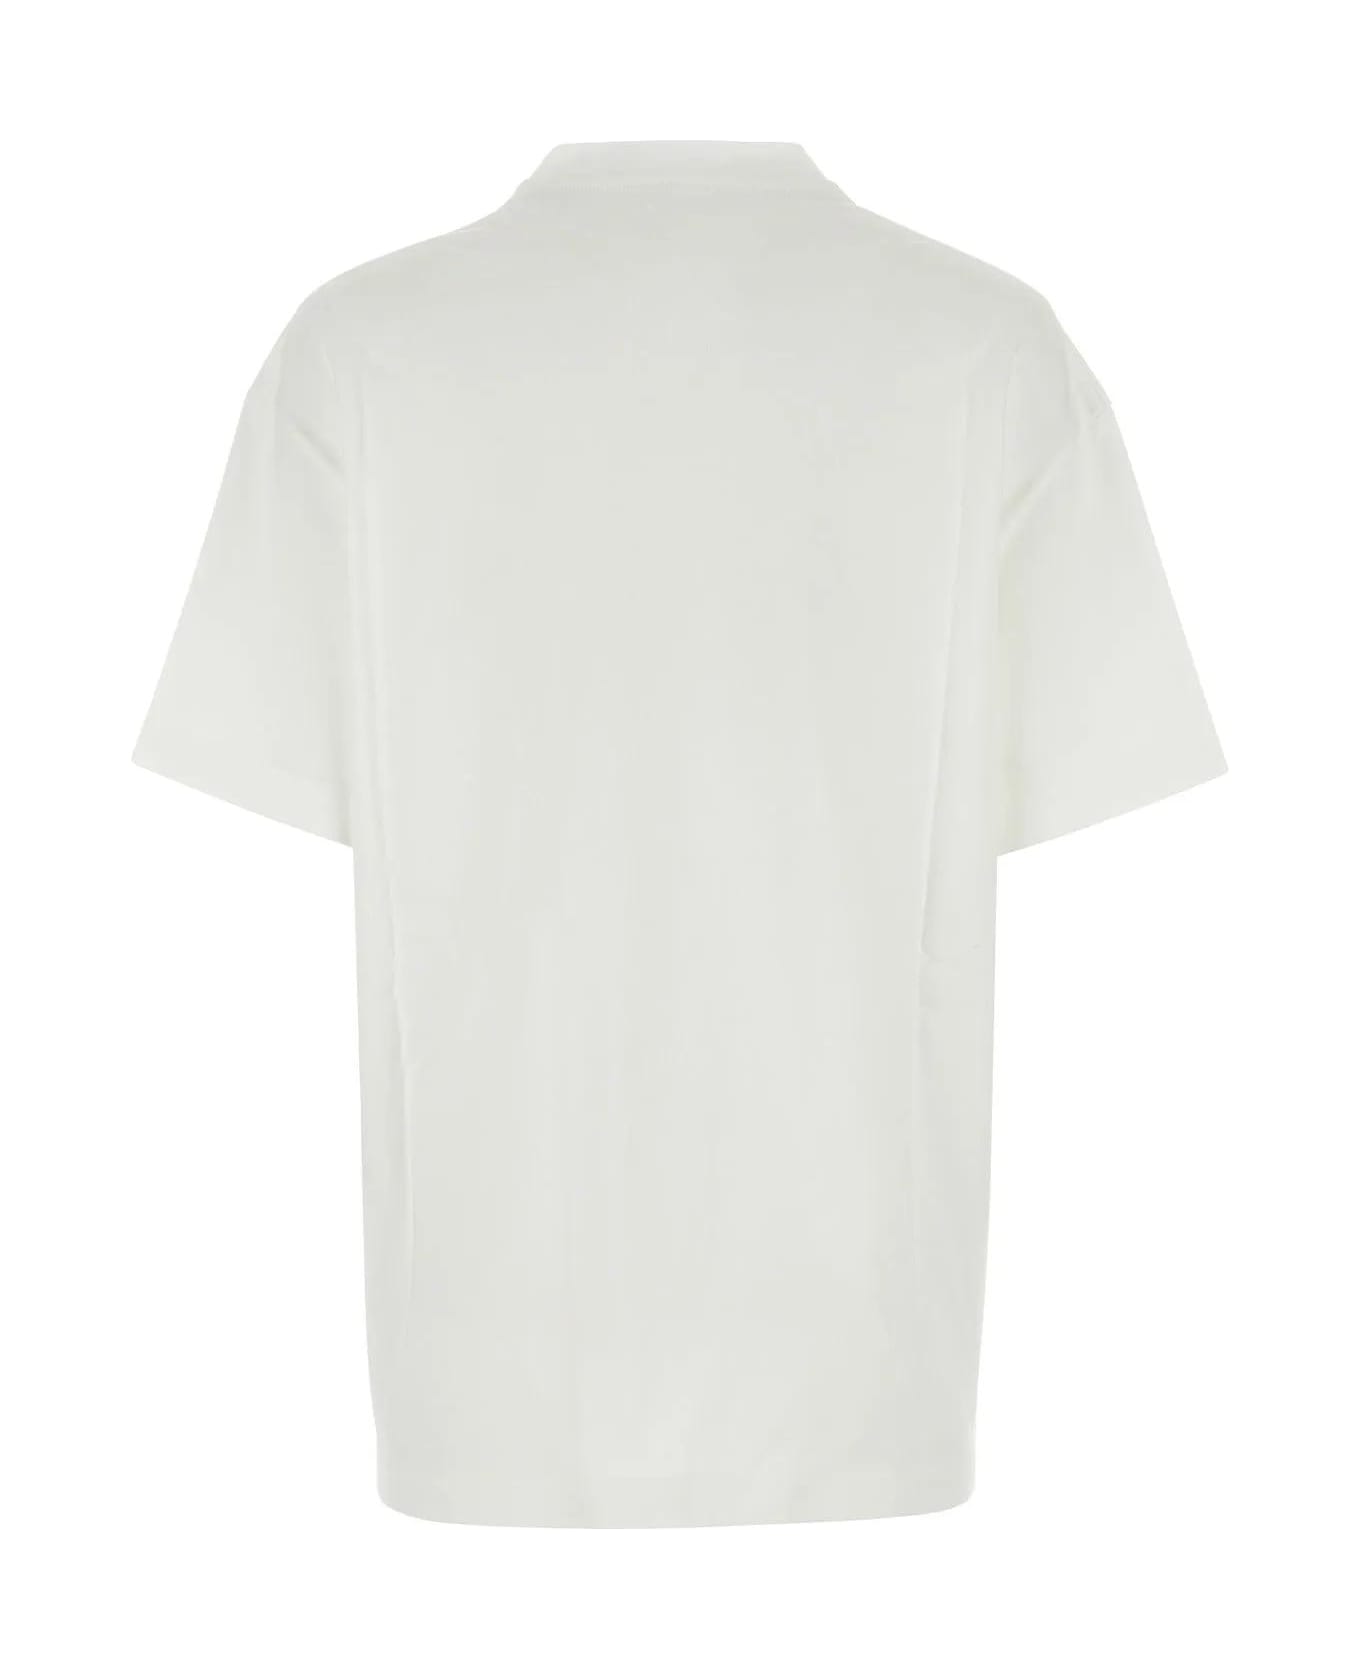 Jil Sander White Cotton T-shirt - White